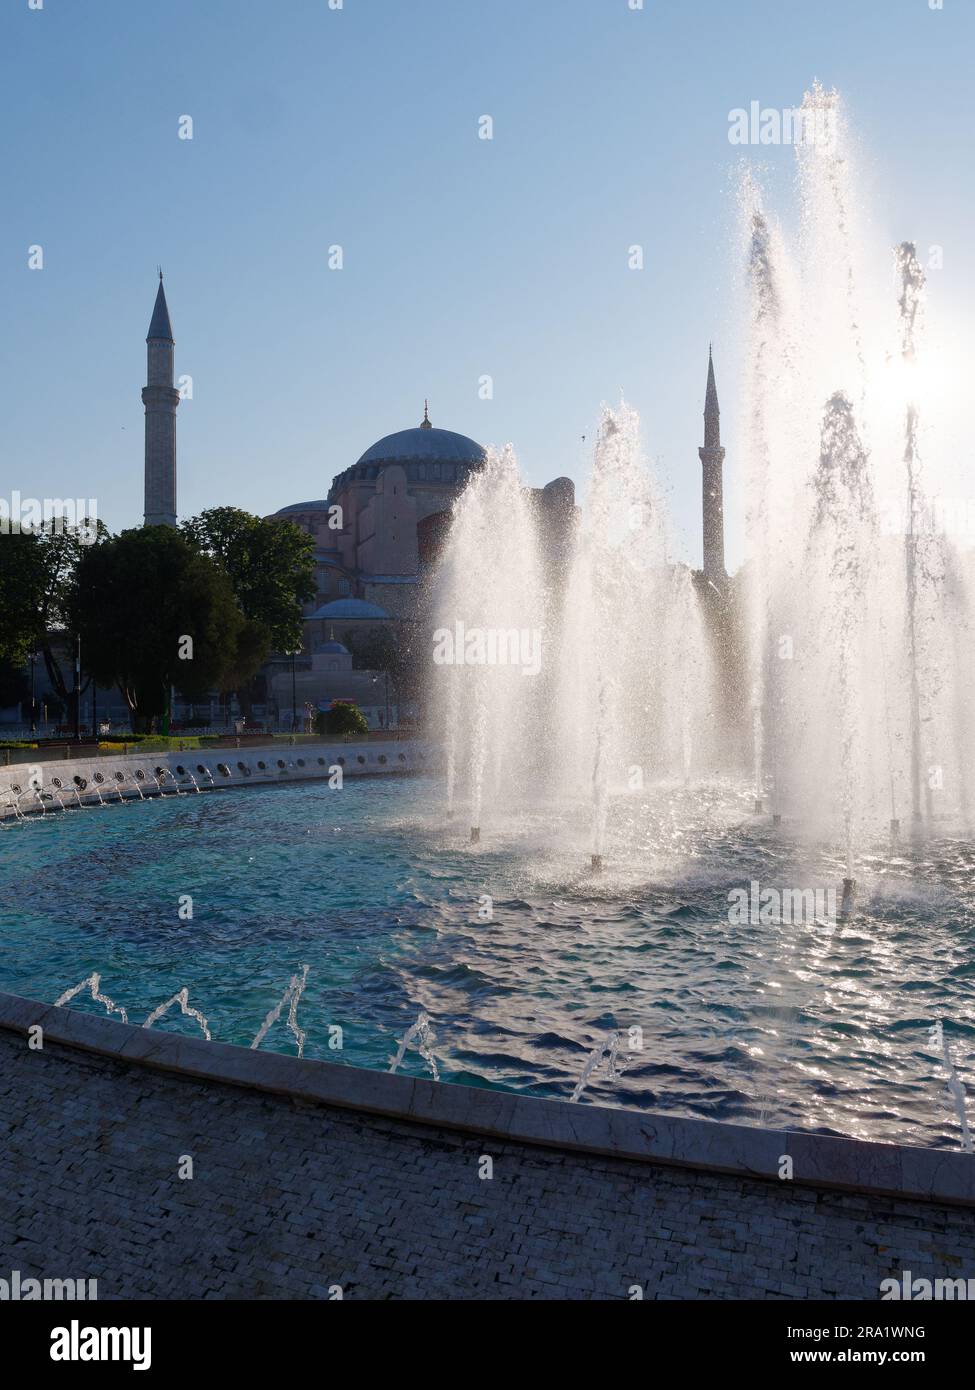 Brunnen vor der Hagia Sophia Moschee an einem Sommermorgen im Stadtteil Sultanahmet in Istanbul, Türkei Stockfoto